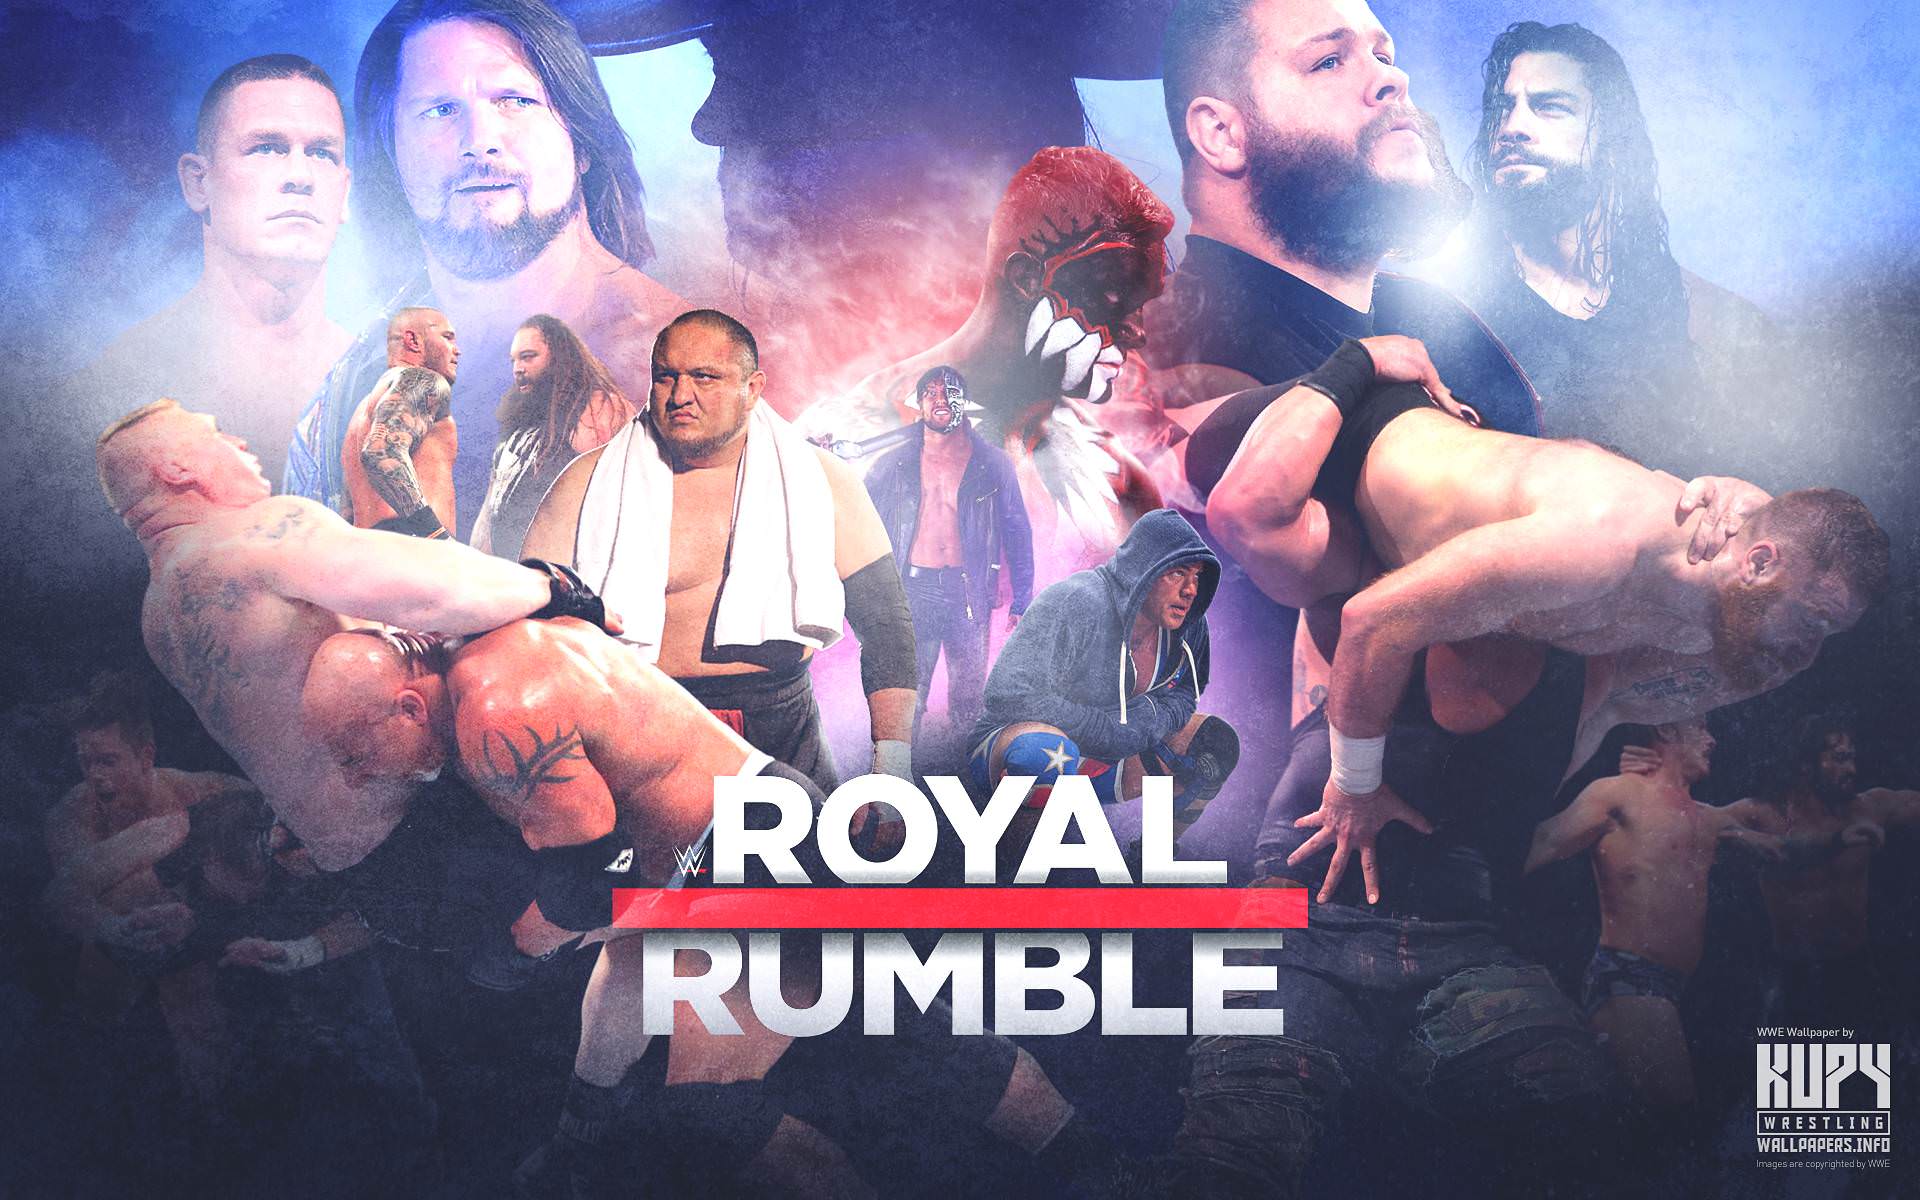 NEW 2017 WWE Royal Rumble wallpaper! Wrestling Wallpaper